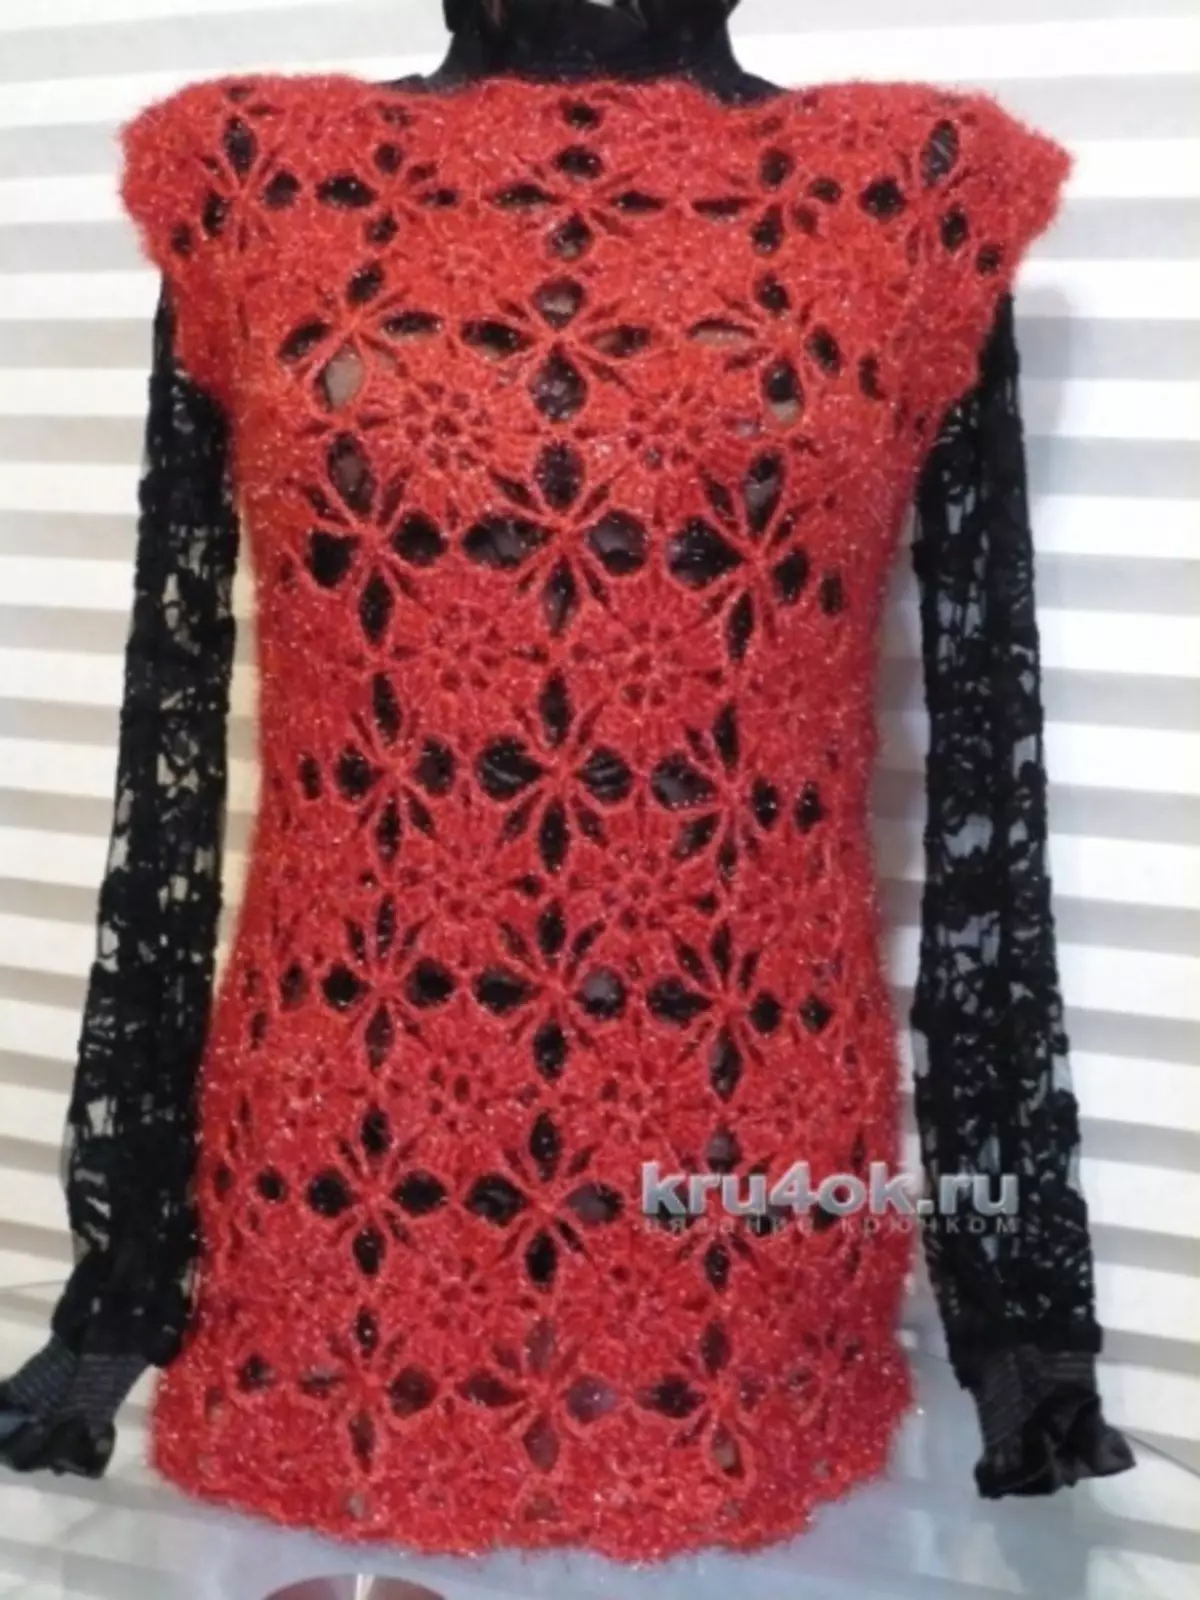 Tunic frá Crochet Motifs: Master Class með Knitting Schemes